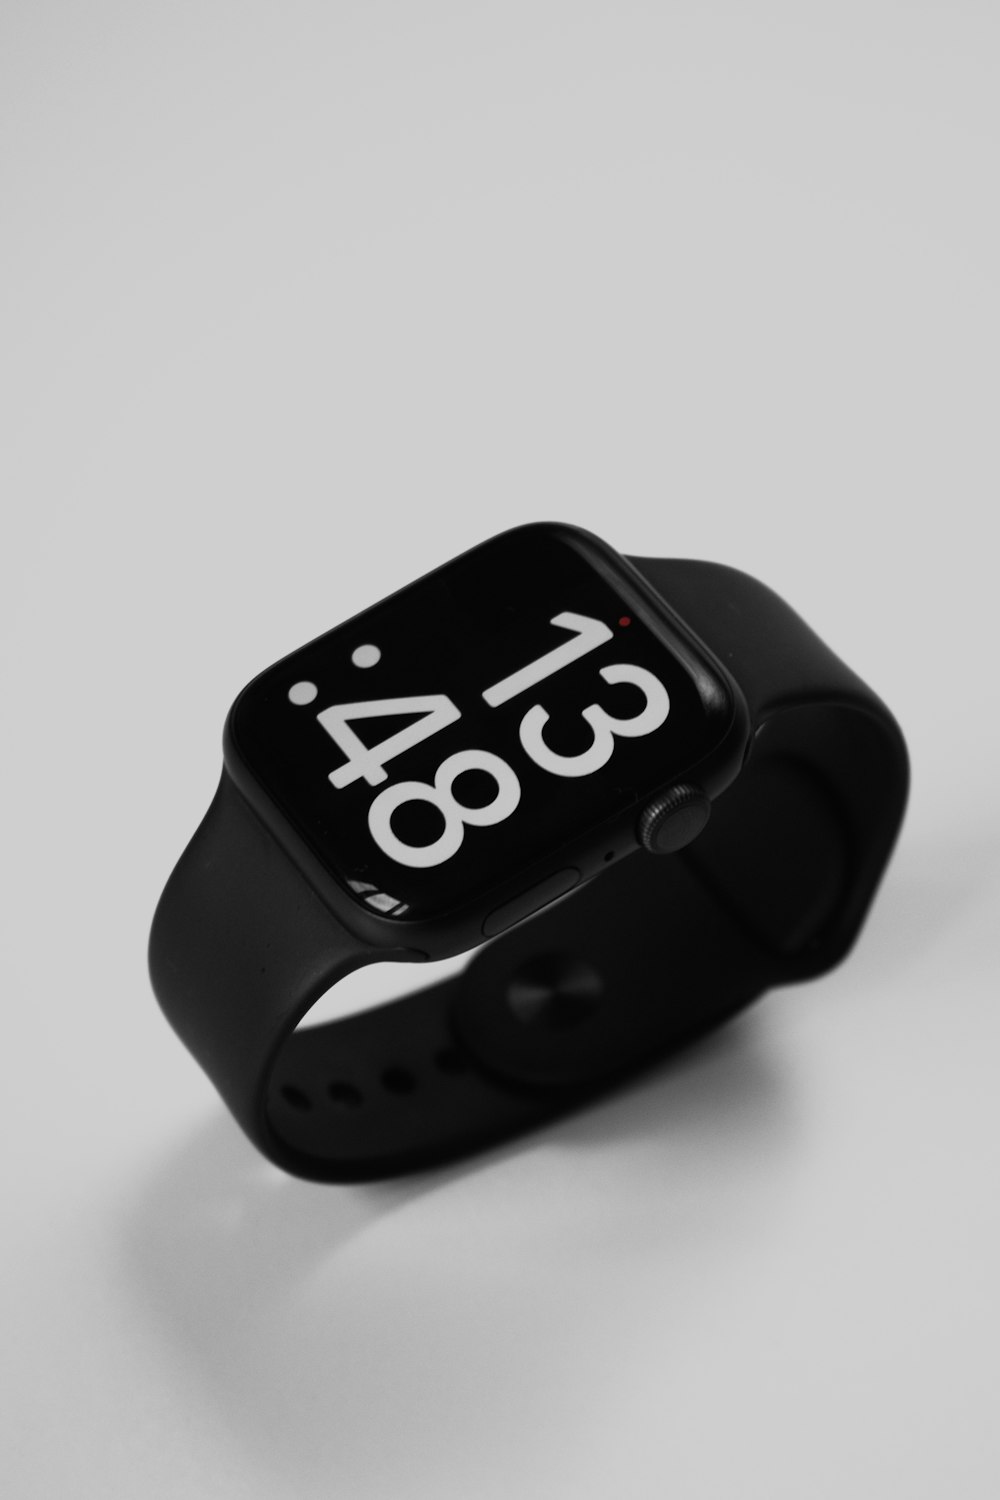 Un Apple Watch con l'ora visualizzata su di esso